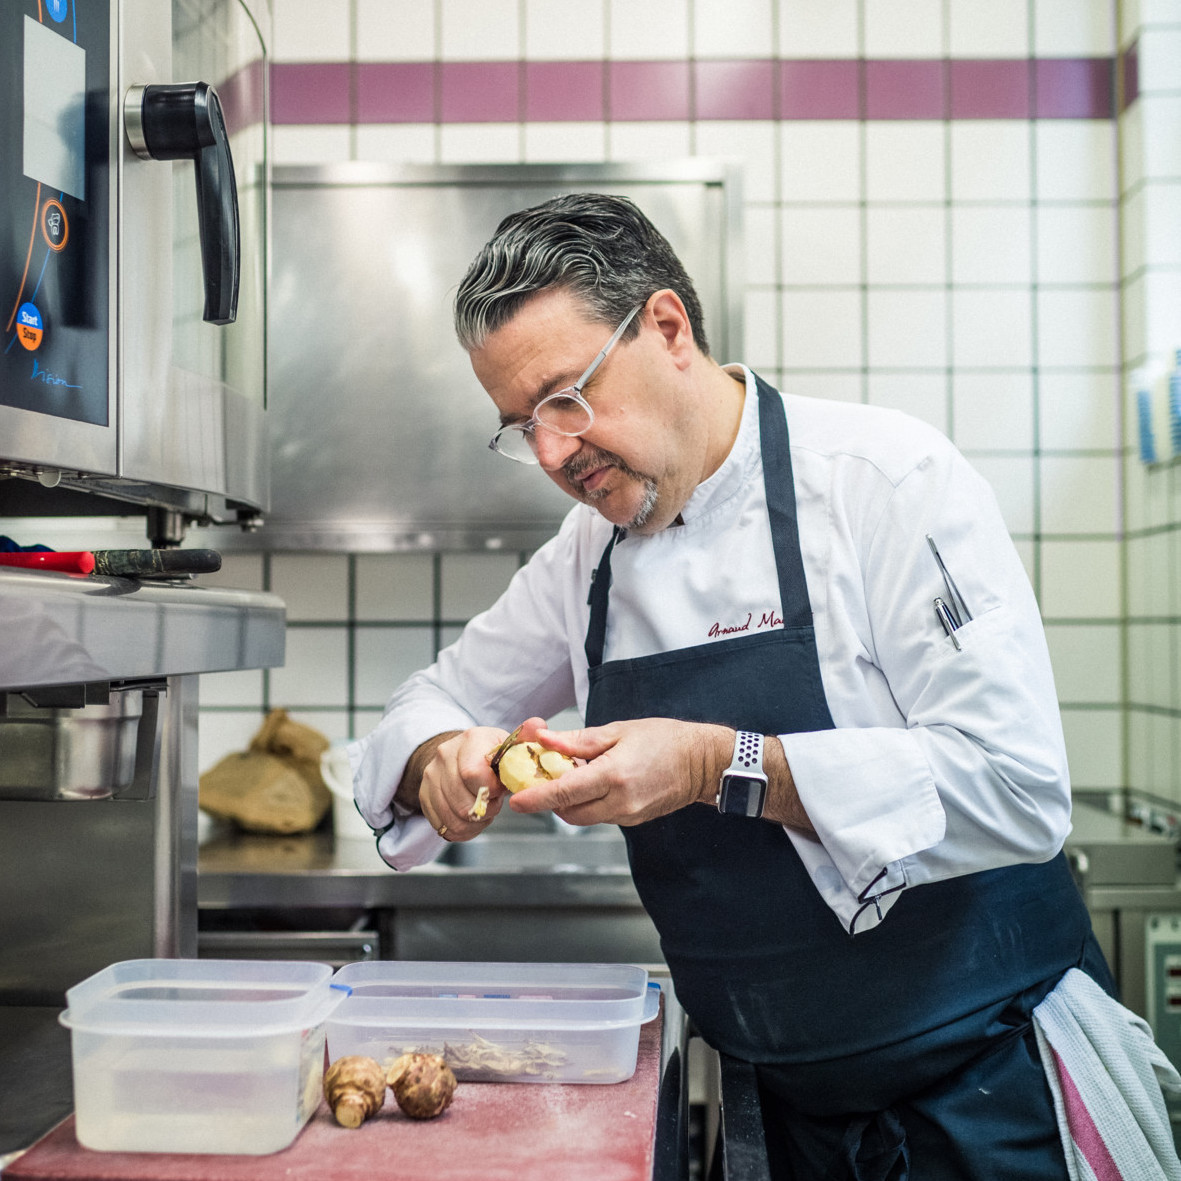 Le chef étoilé du restaurant Clairefontaine, Arnaud Magnier, est un des plus fervents défenseurs de la prise de coordonnées bancaires à la réservation au Luxembourg, malgré une première expérience assez décevante en la matière…  (Photo: Mike Zenari/Maison Moderne)